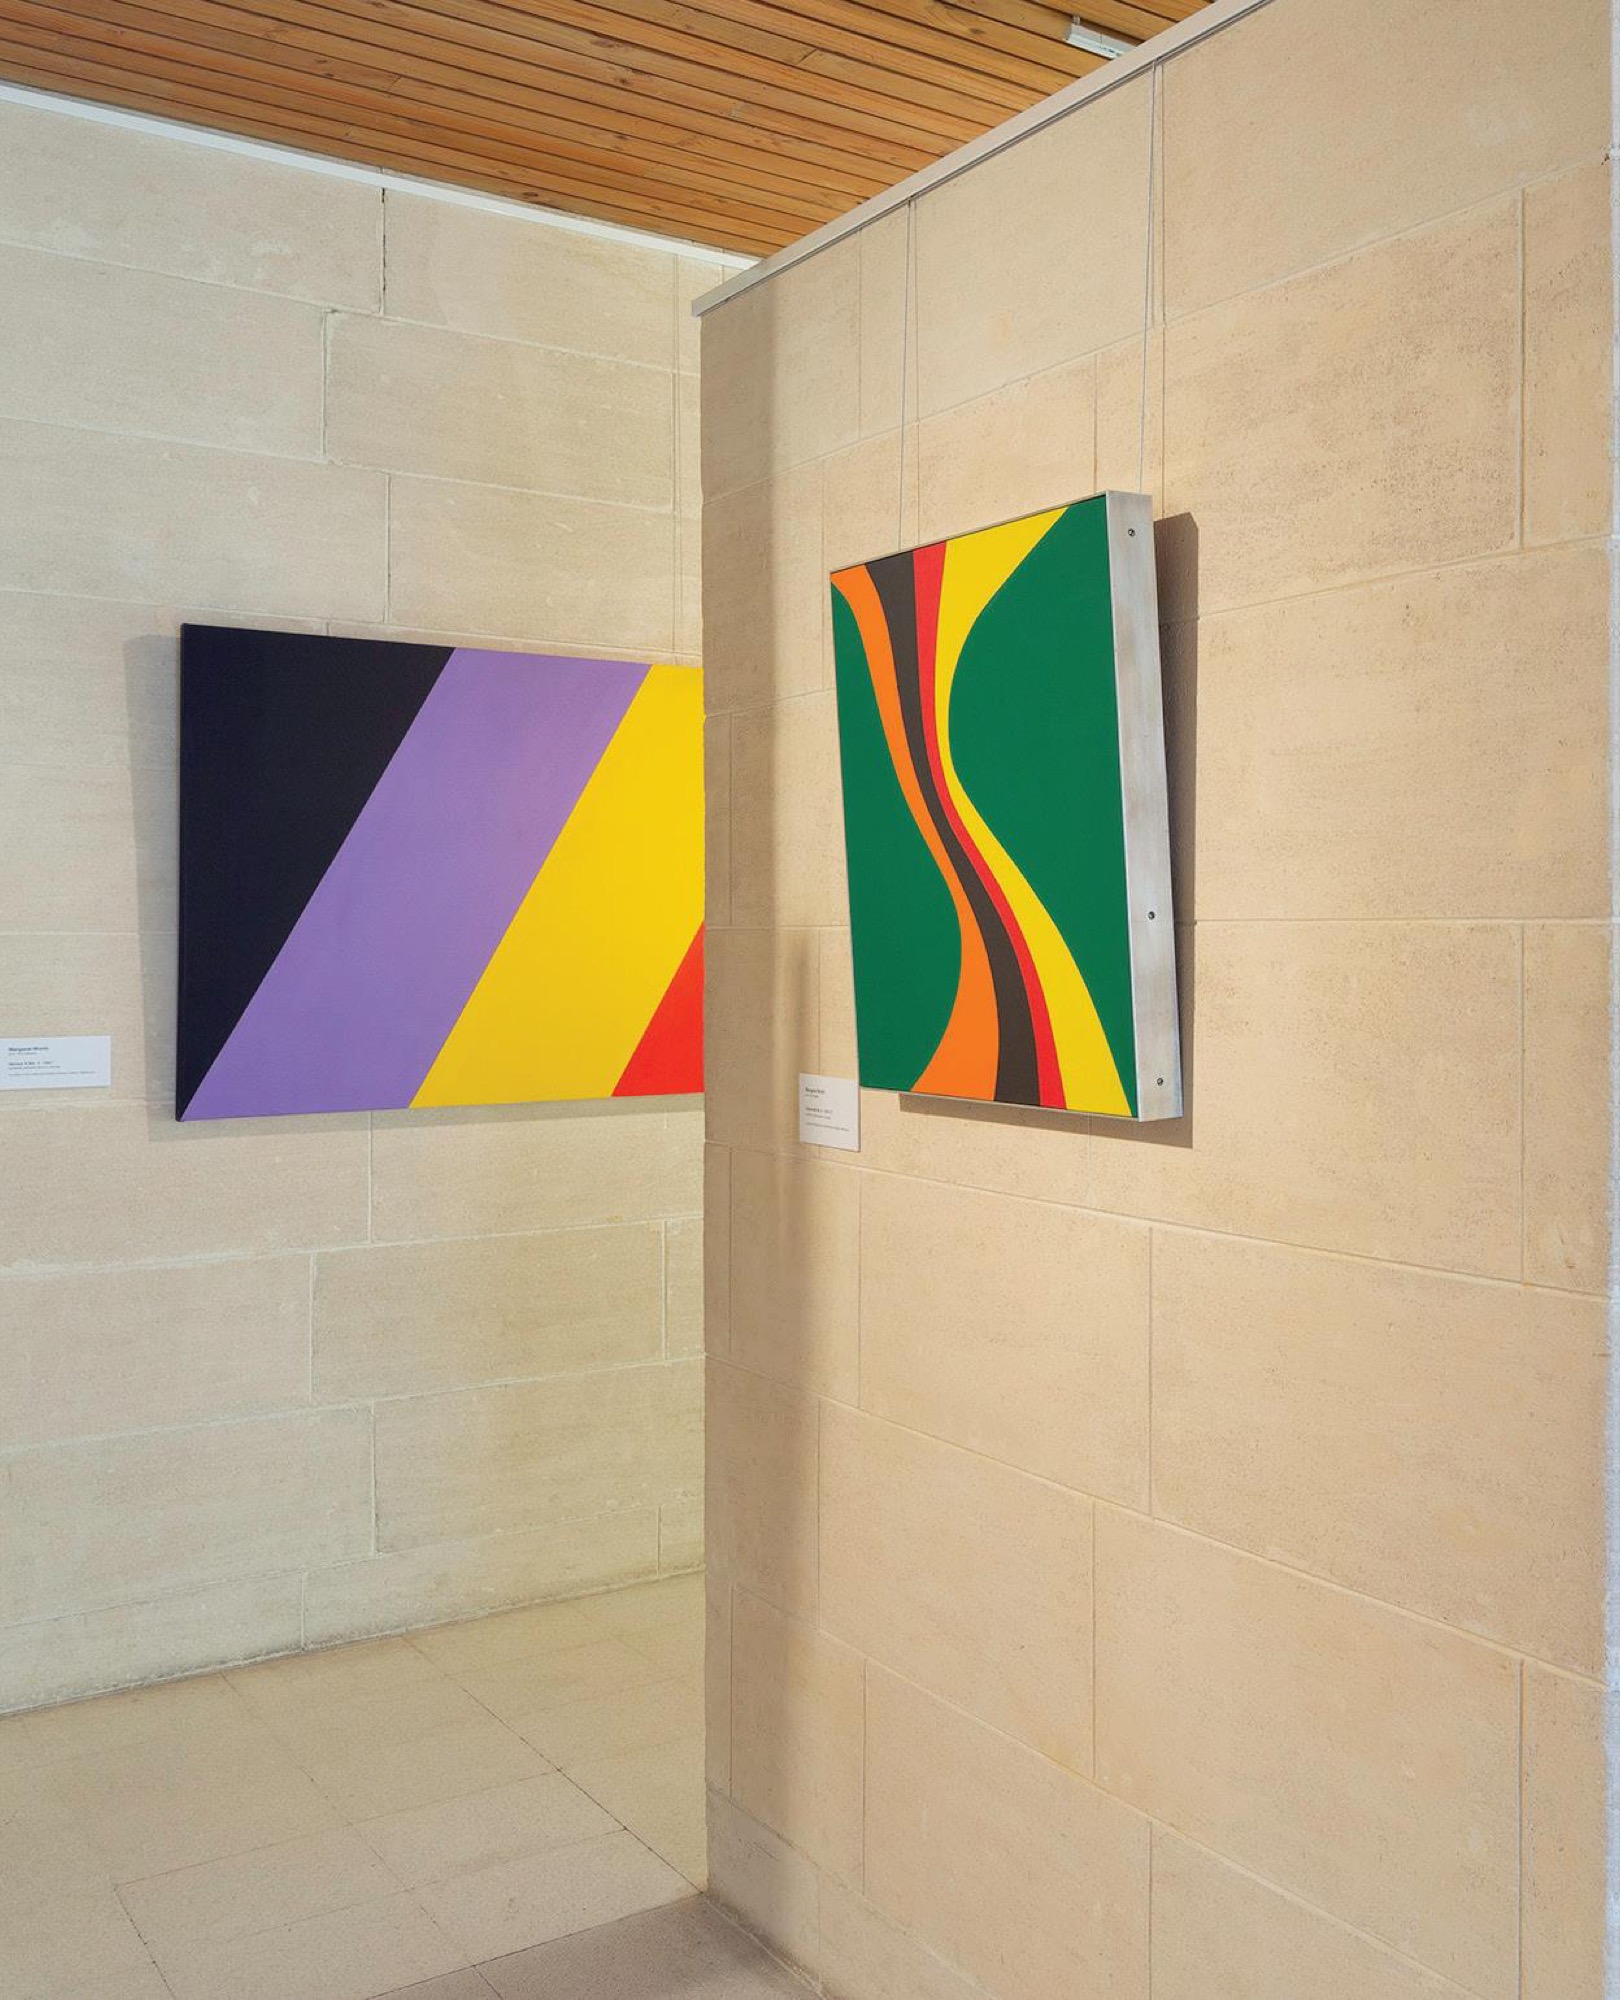 Installation view featuring Margaret Worth, <em>Sukhavati No. 4,</em> 1967 (foreground) <em>Genus 0 No. 1,</em>1967 (background), <em>Sweeney Reed and Strines</em> Gallery, Heide Museum of Modern Art 2018. Photograph: Christian Capurro.